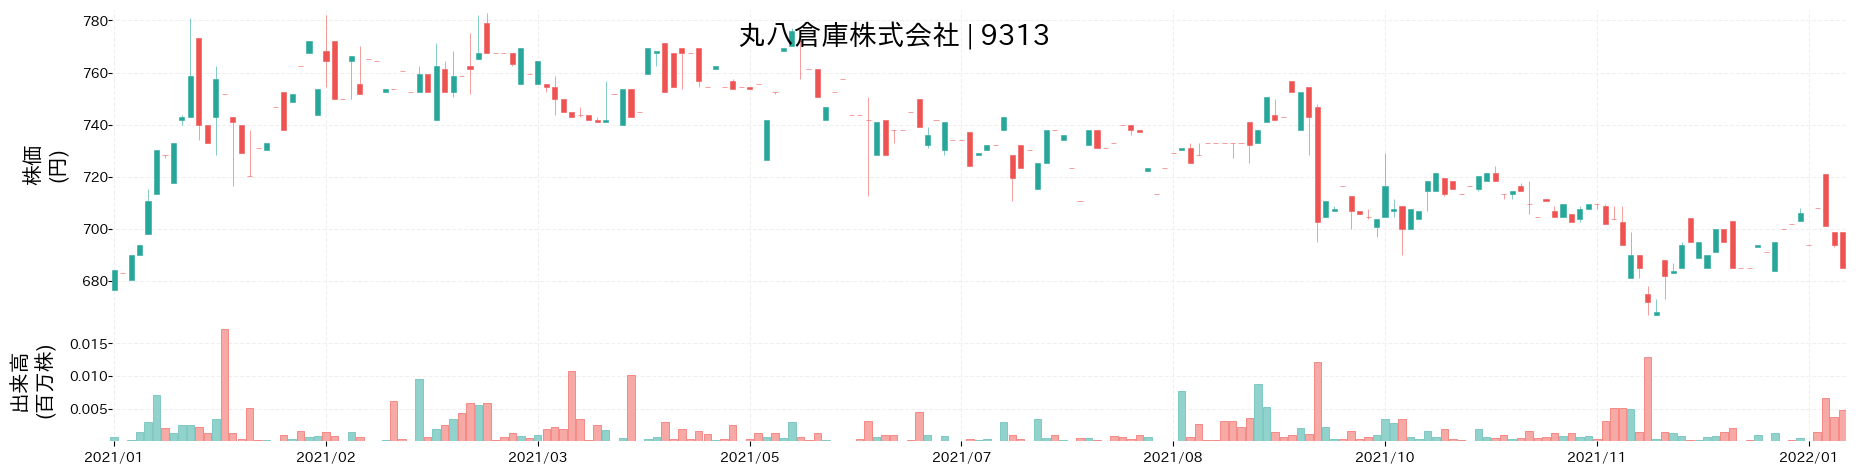 丸八倉庫の株価推移(2021)